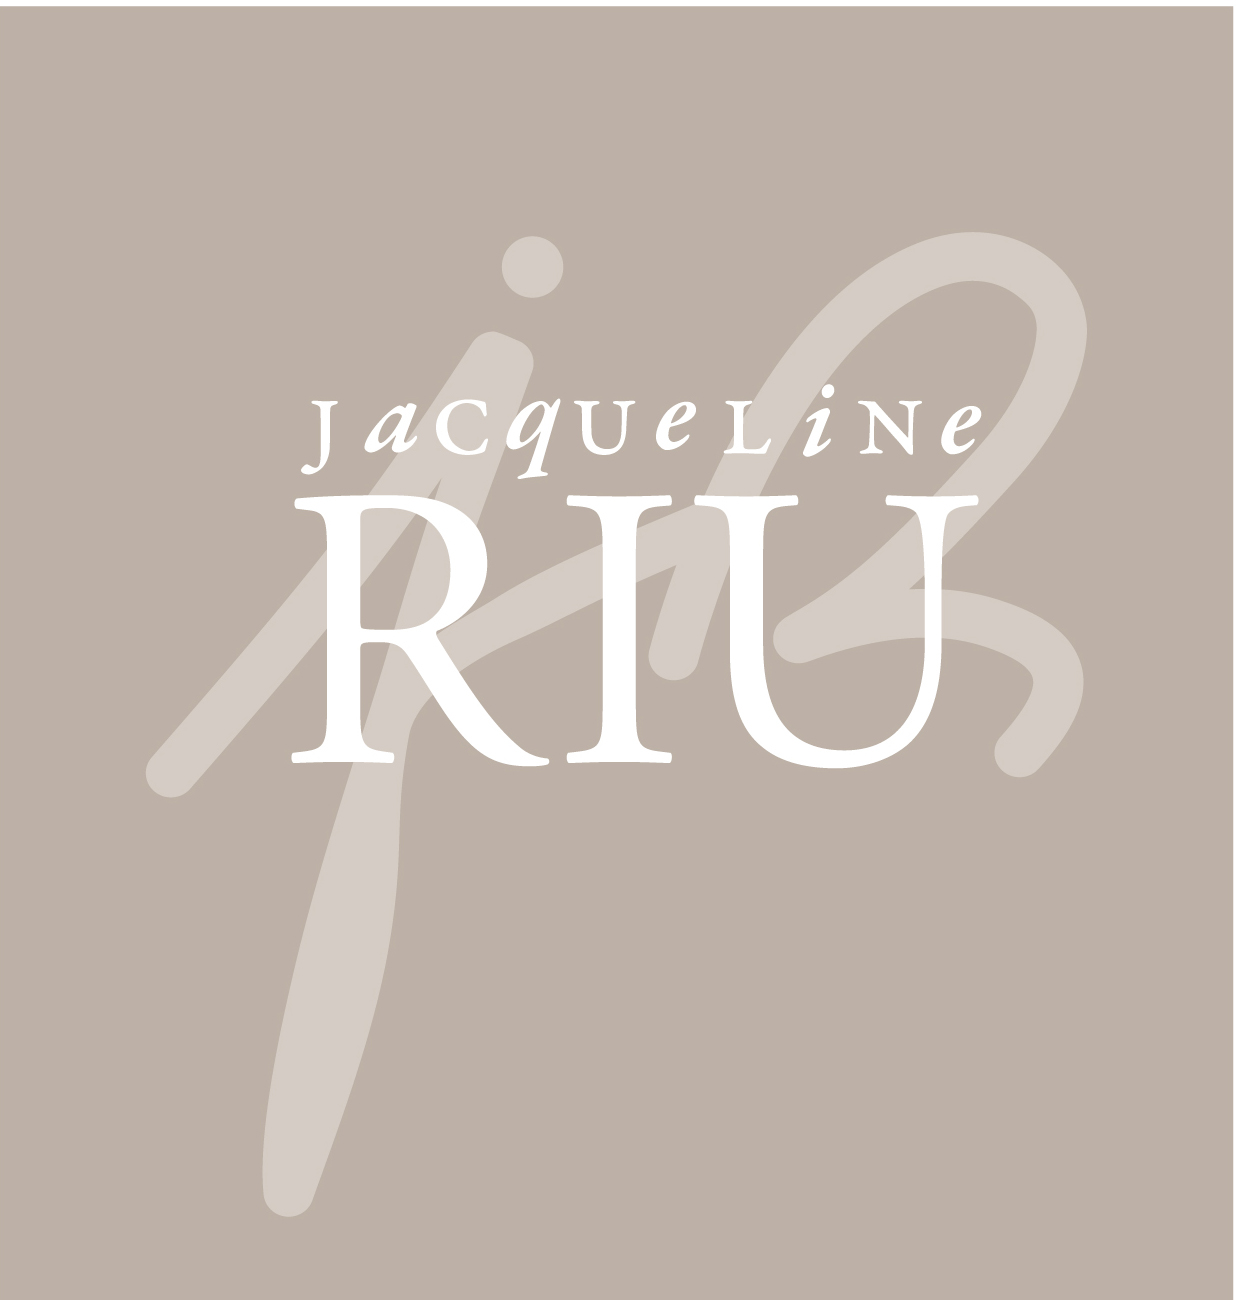 www.toutesvosmarques.com : CABRIOLE propose la marque JACQUELINE RIU